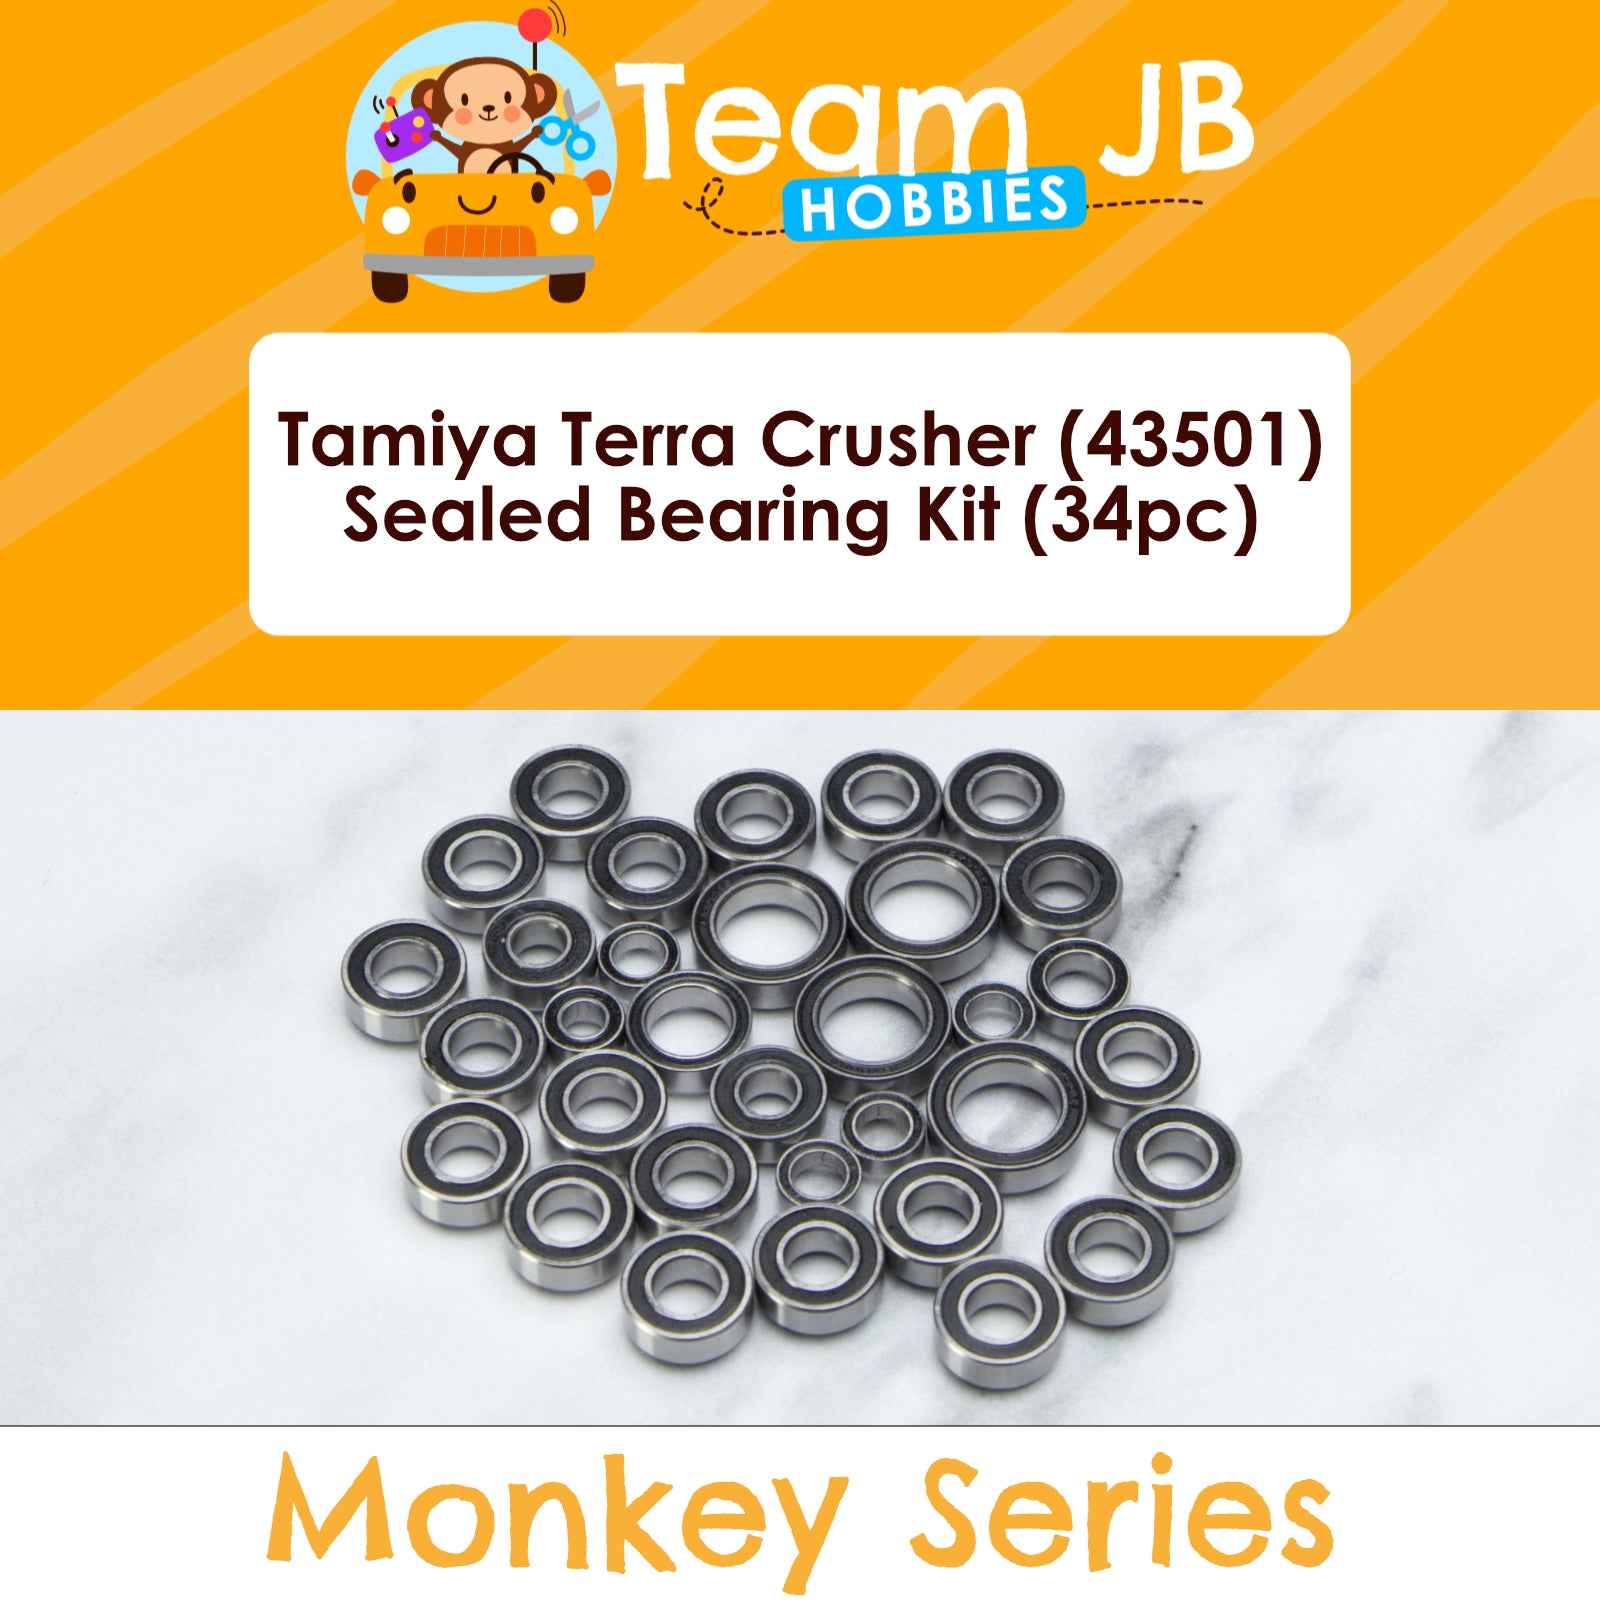 Tamiya Terra Crusher (43501) - Sealed Bearing Kit